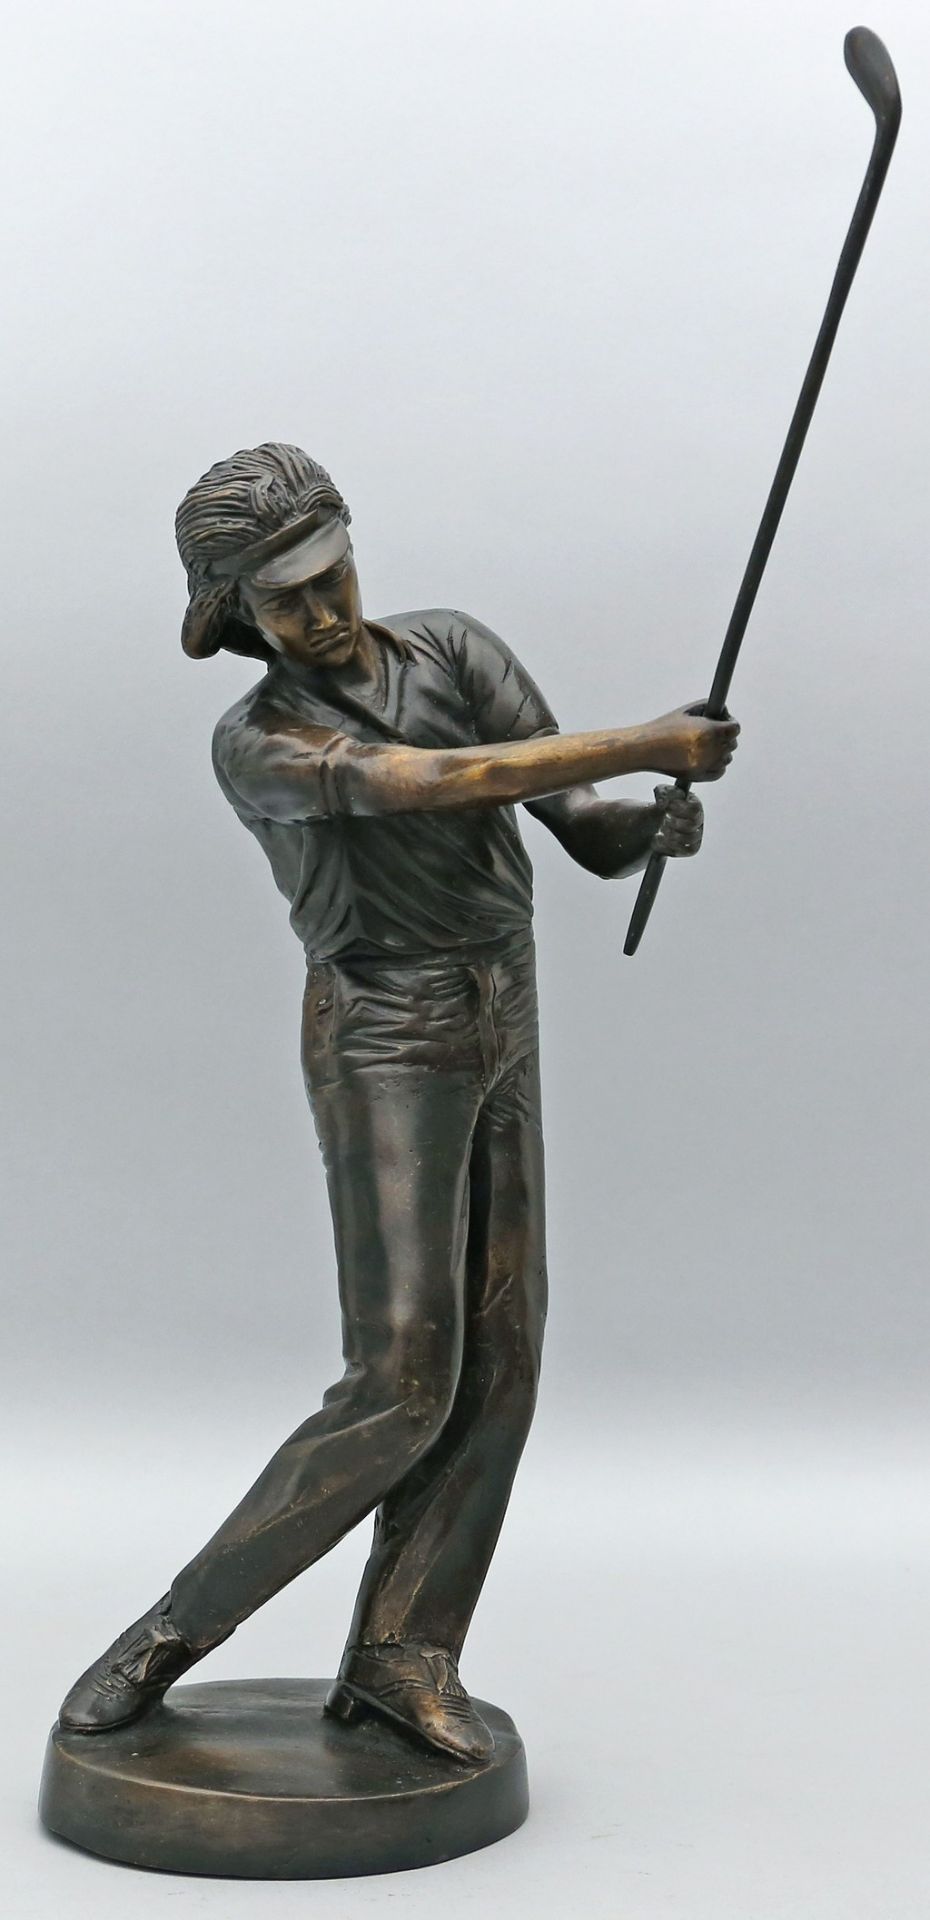 Skulptur eines Golfspielers. - Image 2 of 2